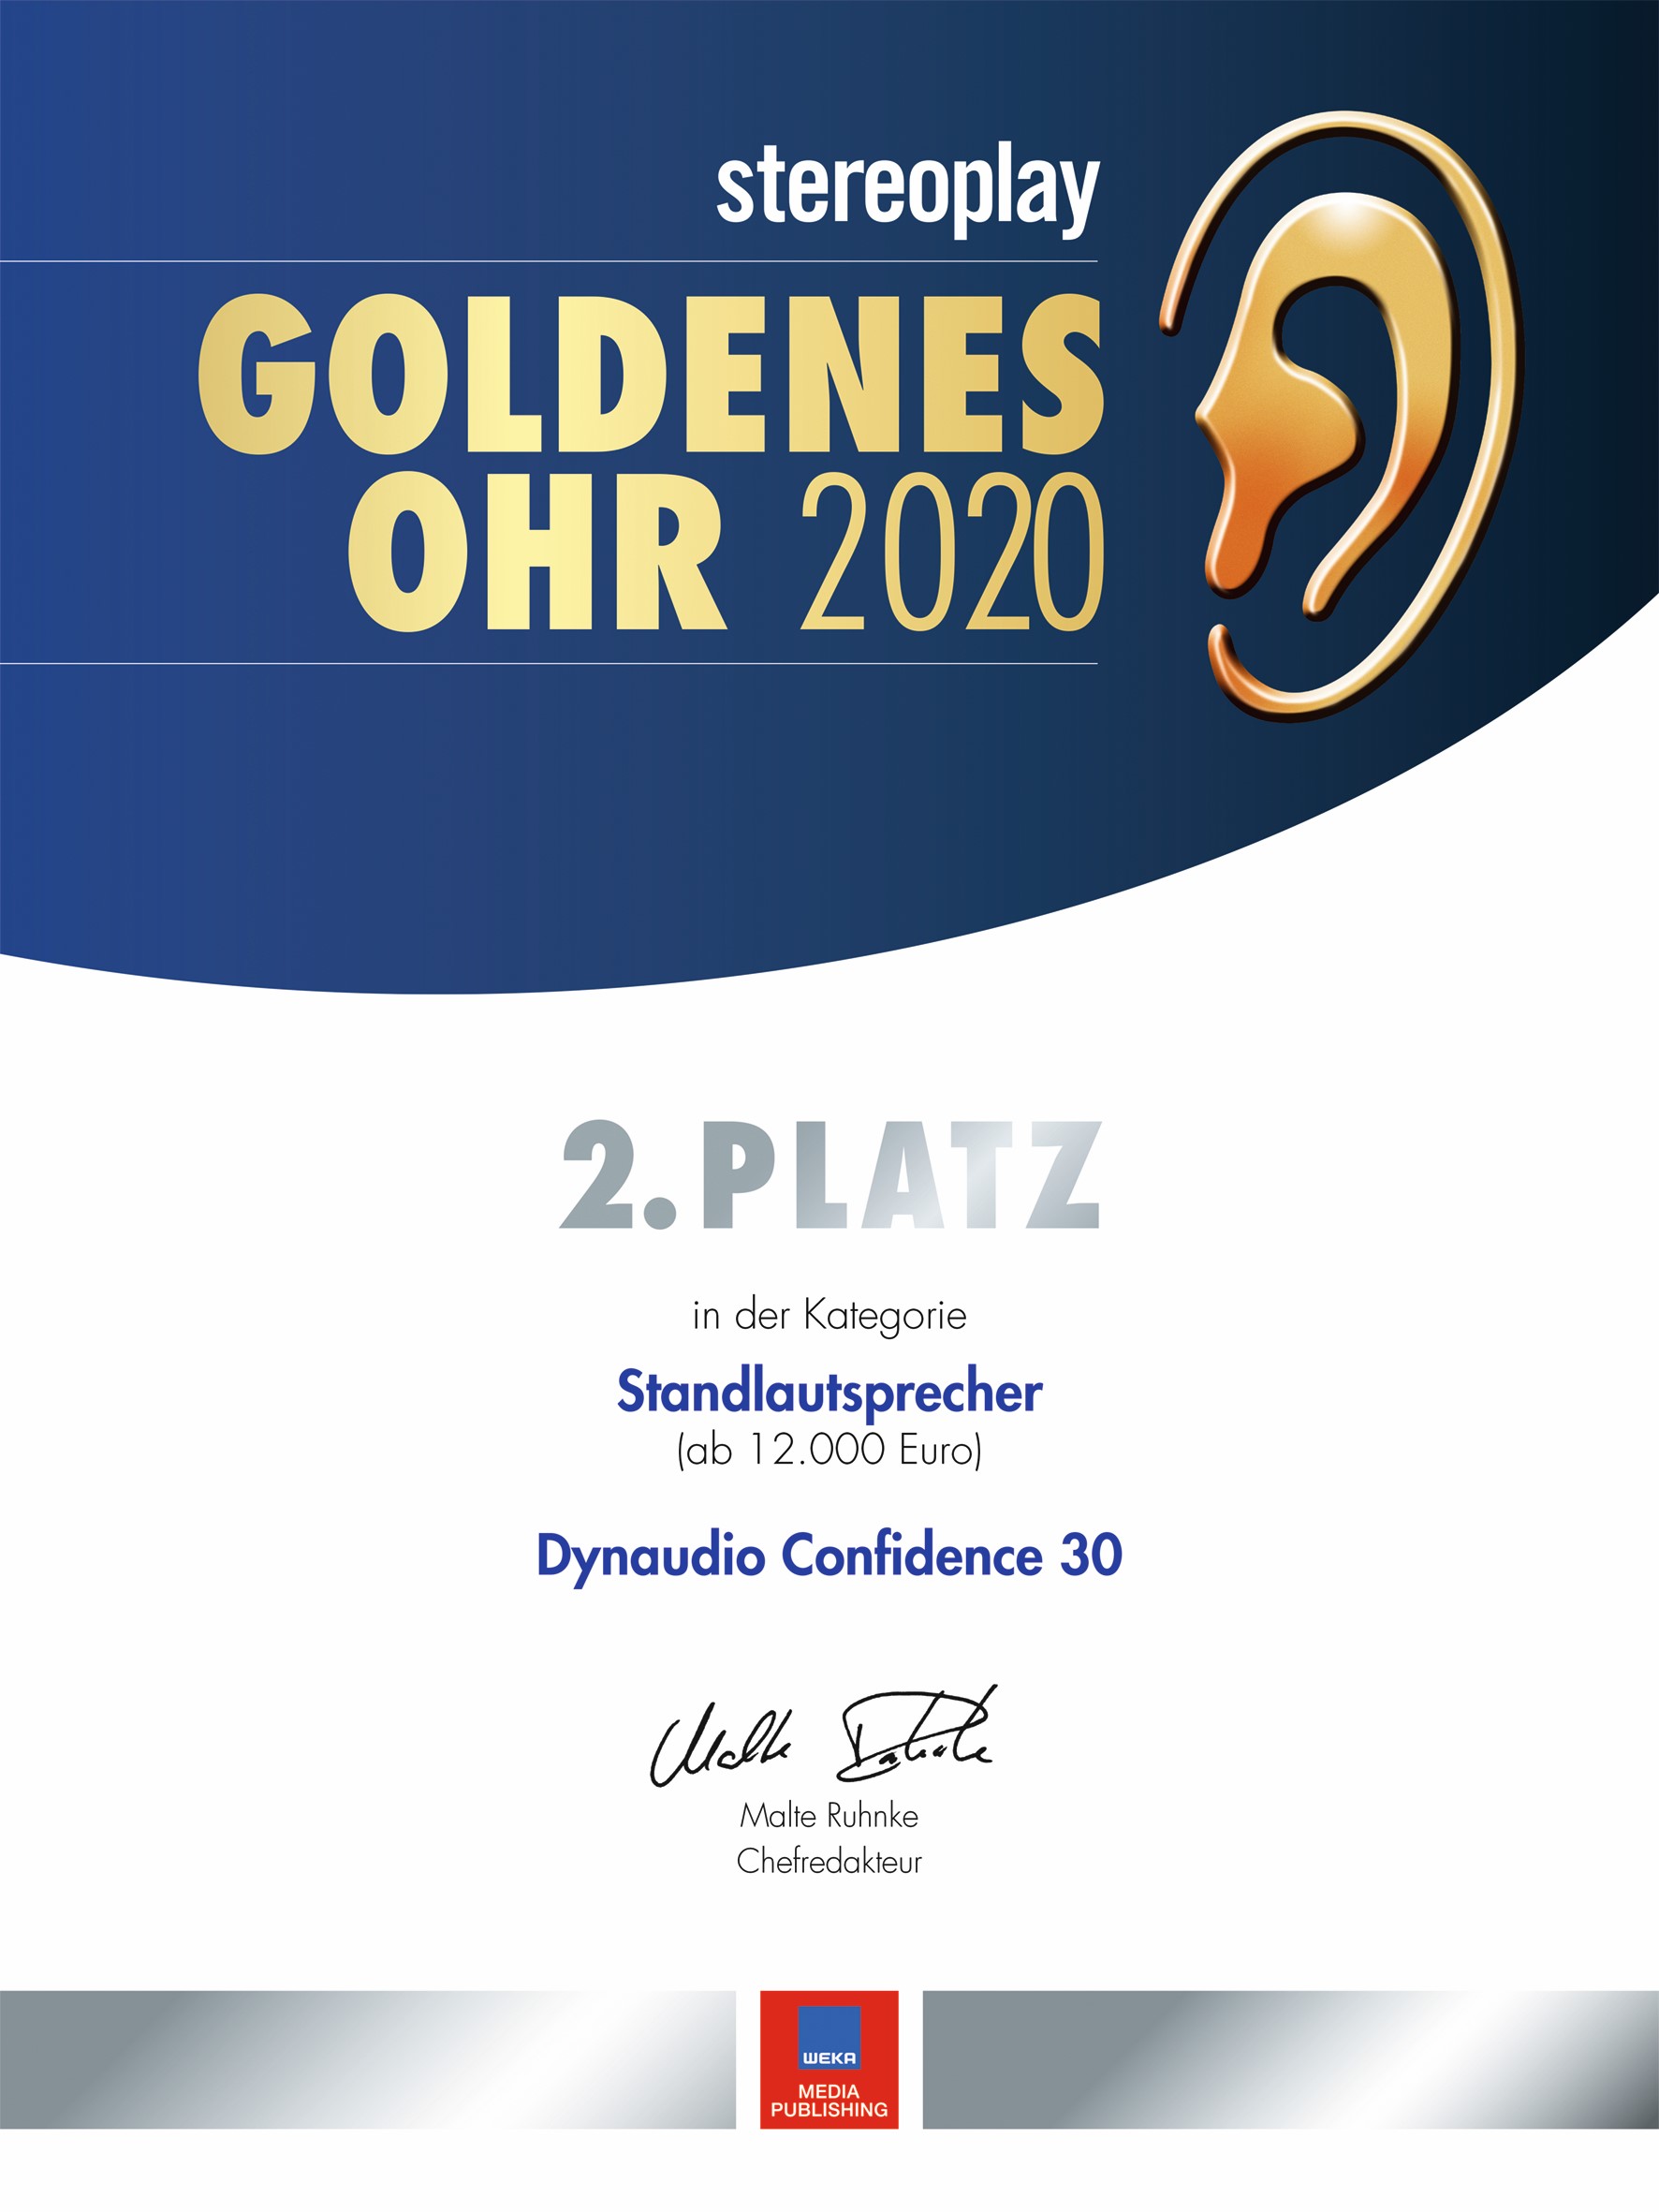 Segment 017 von Urkunde Goldenes Ohr 2020_stereoplay copy